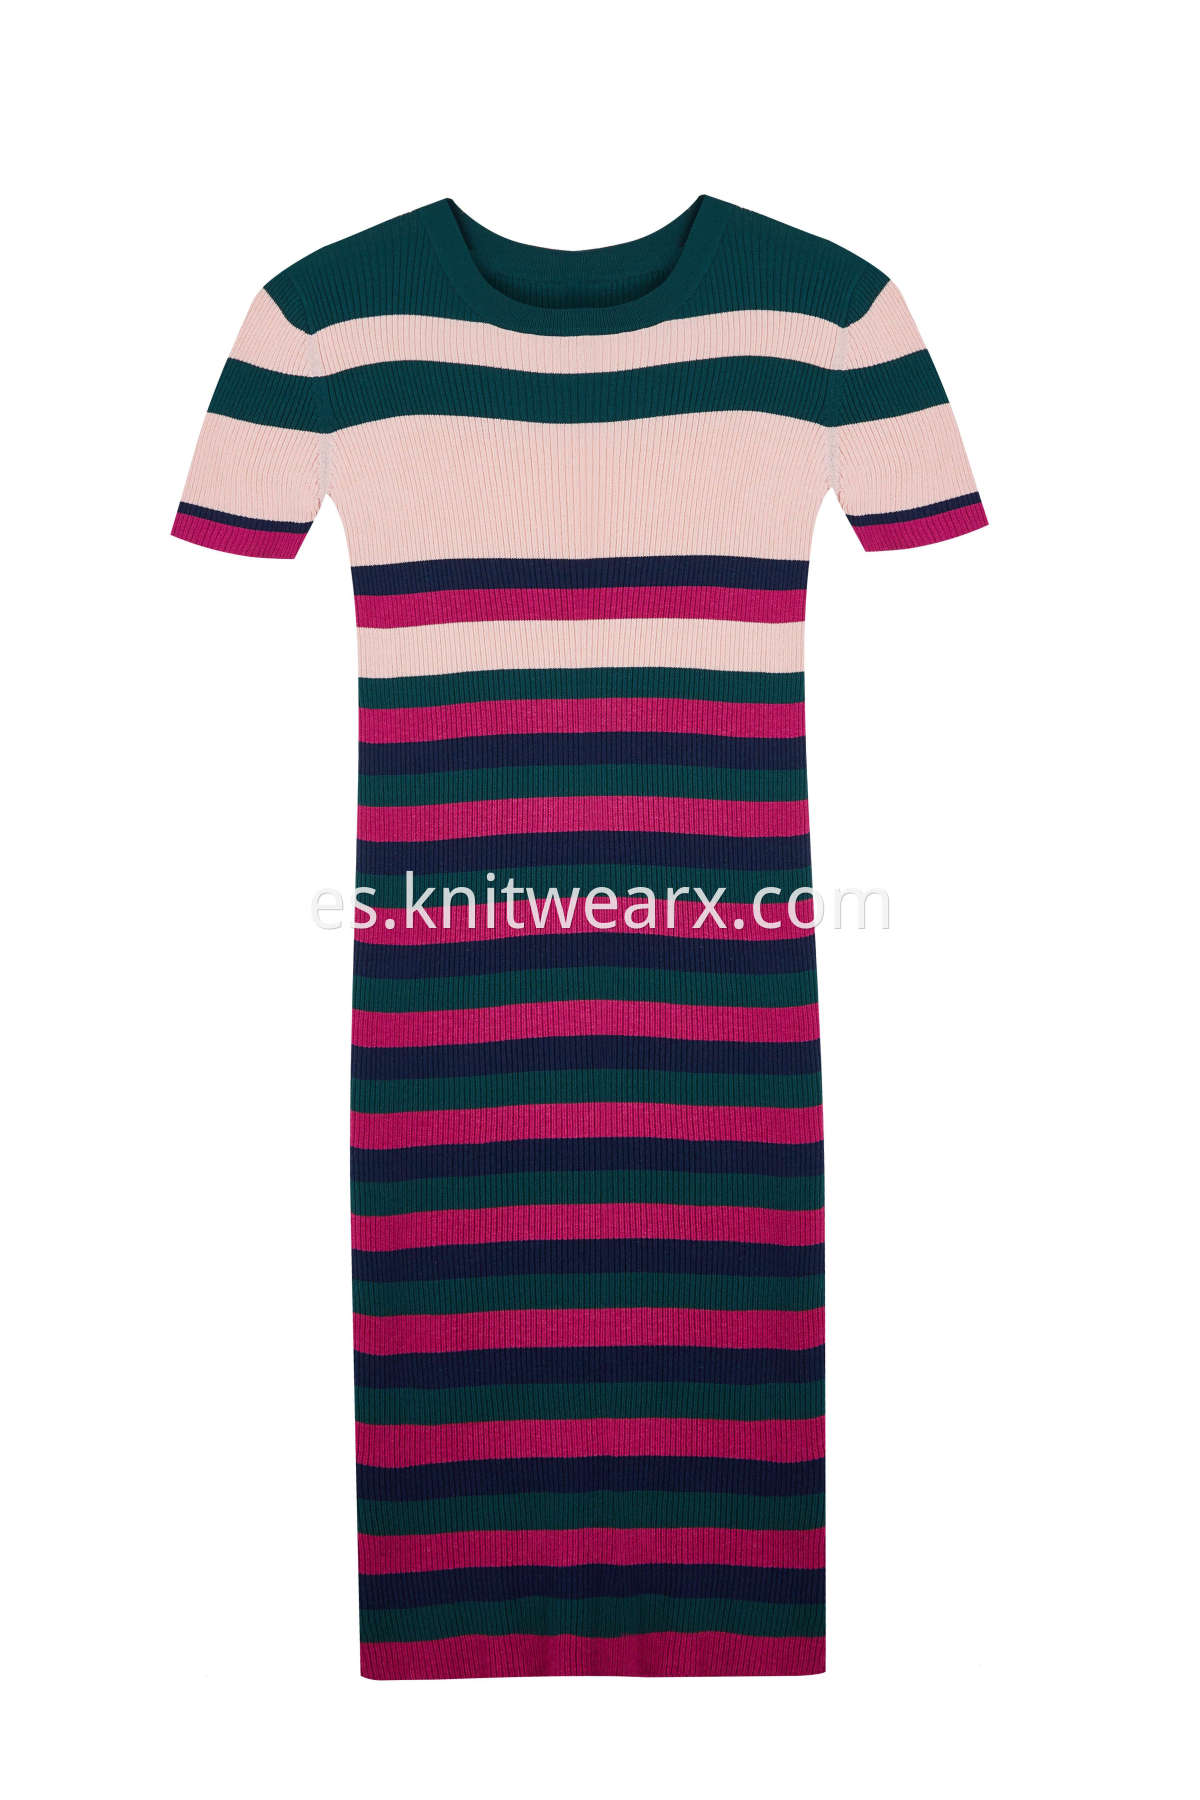 Women's Stripe Ribbed Knitwear Slim Fit Dress Short Sleeves